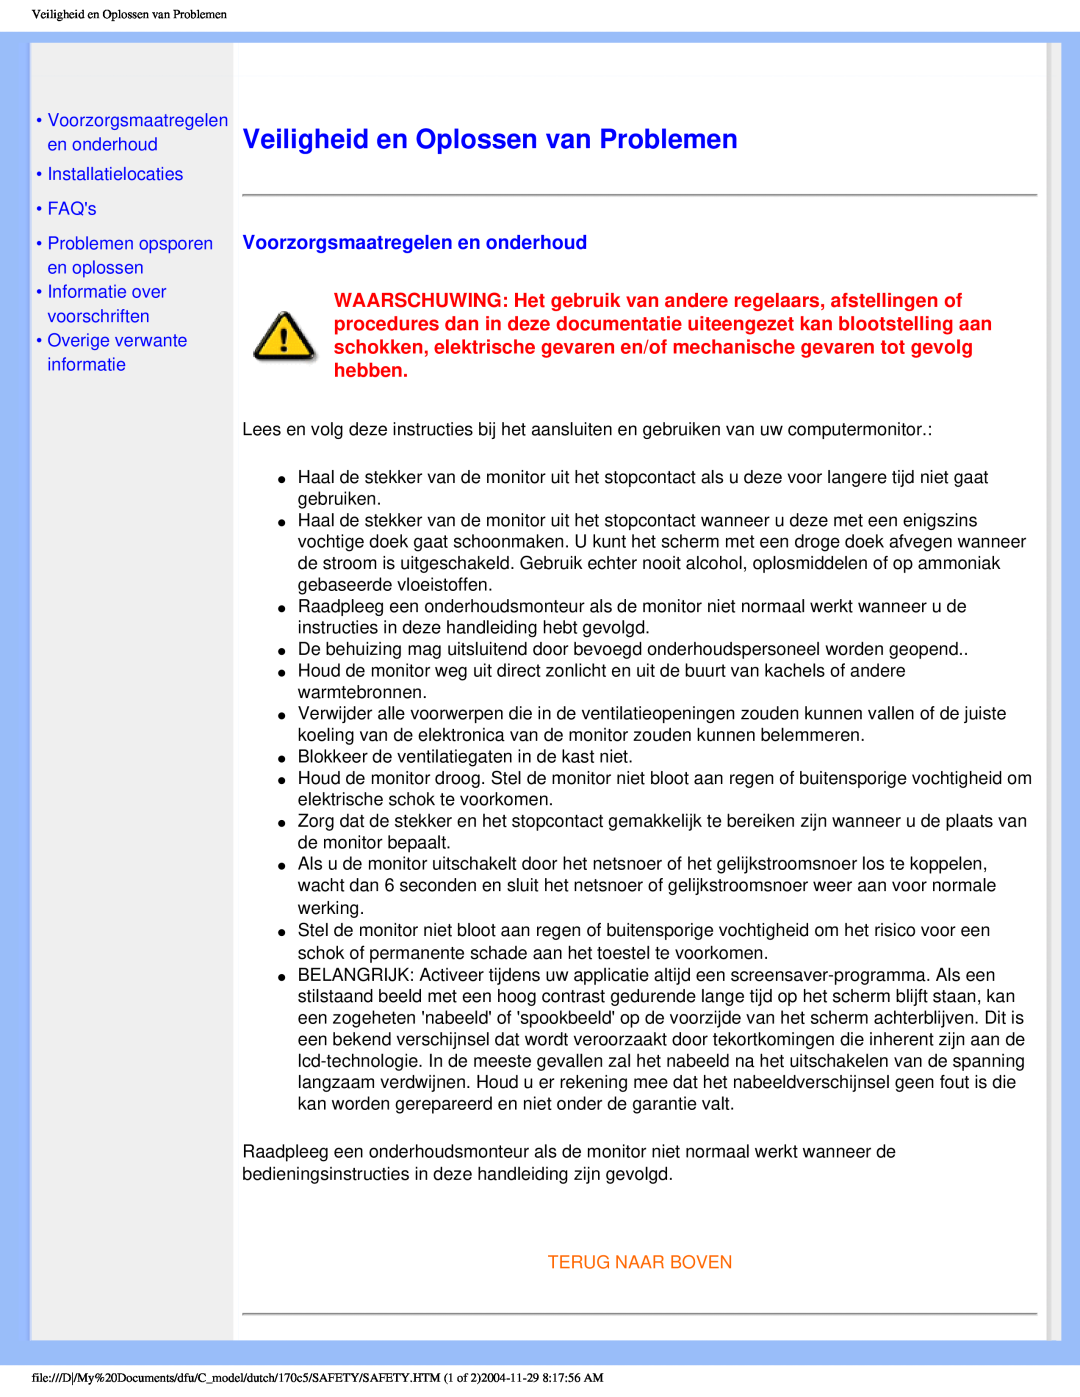 Philips 170C5 user manual Veiligheid en Oplossen van Problemen, Voorzorgsmaatregelen en onderhoud, Installatielocaties FAQs 